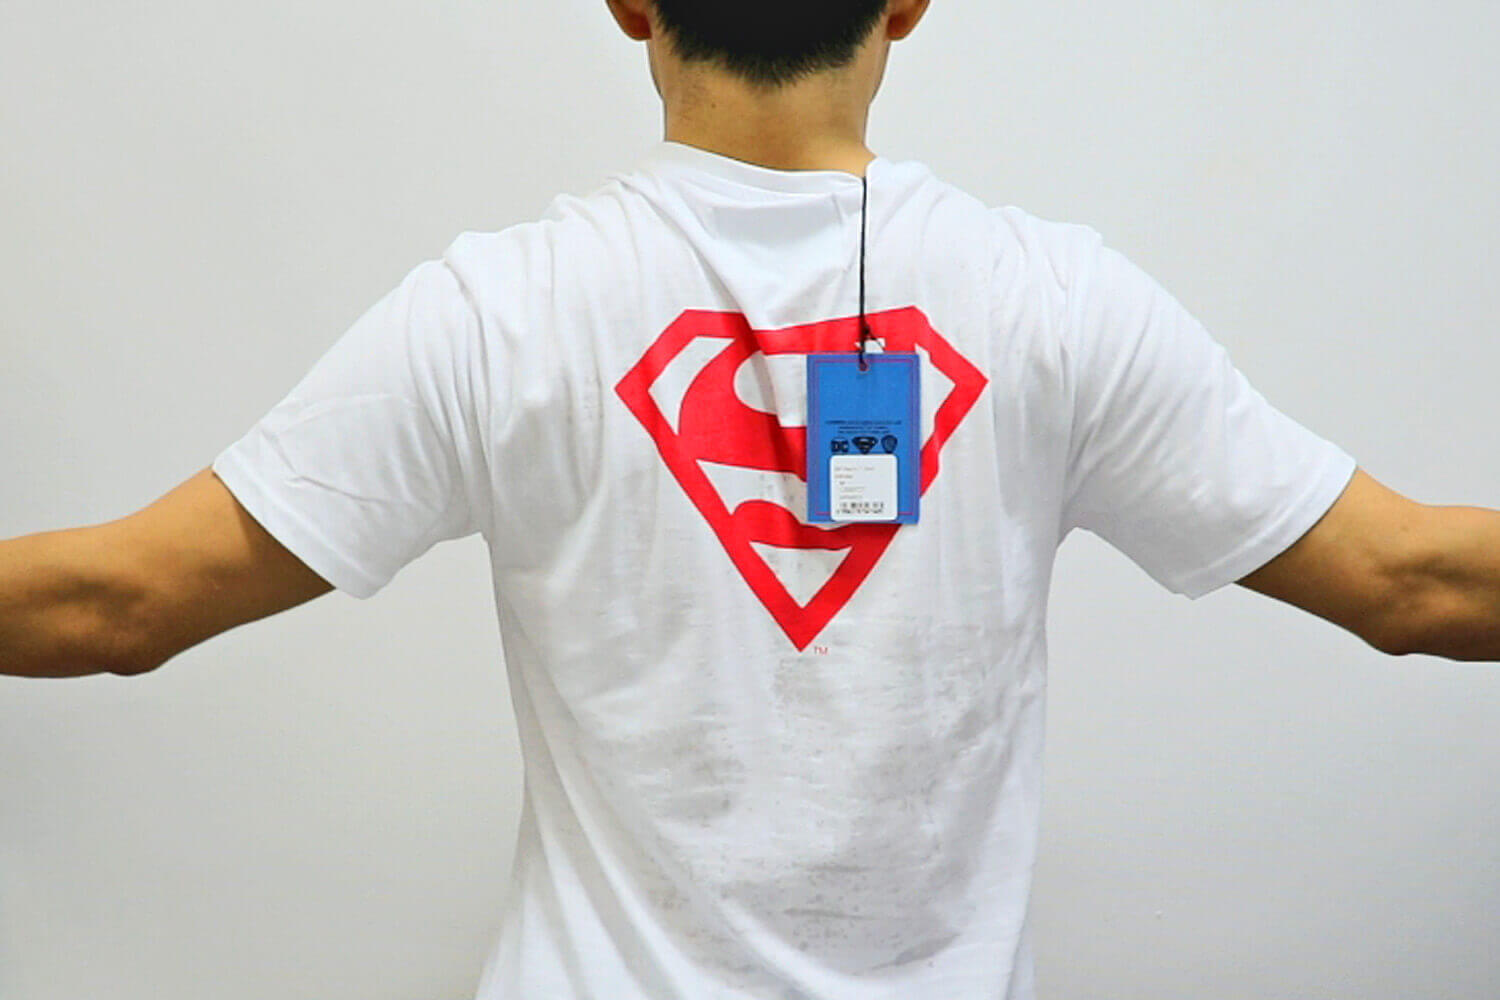 マイプロテイン スーパーマン コラボボックス Tシャツ 試着 後ろ